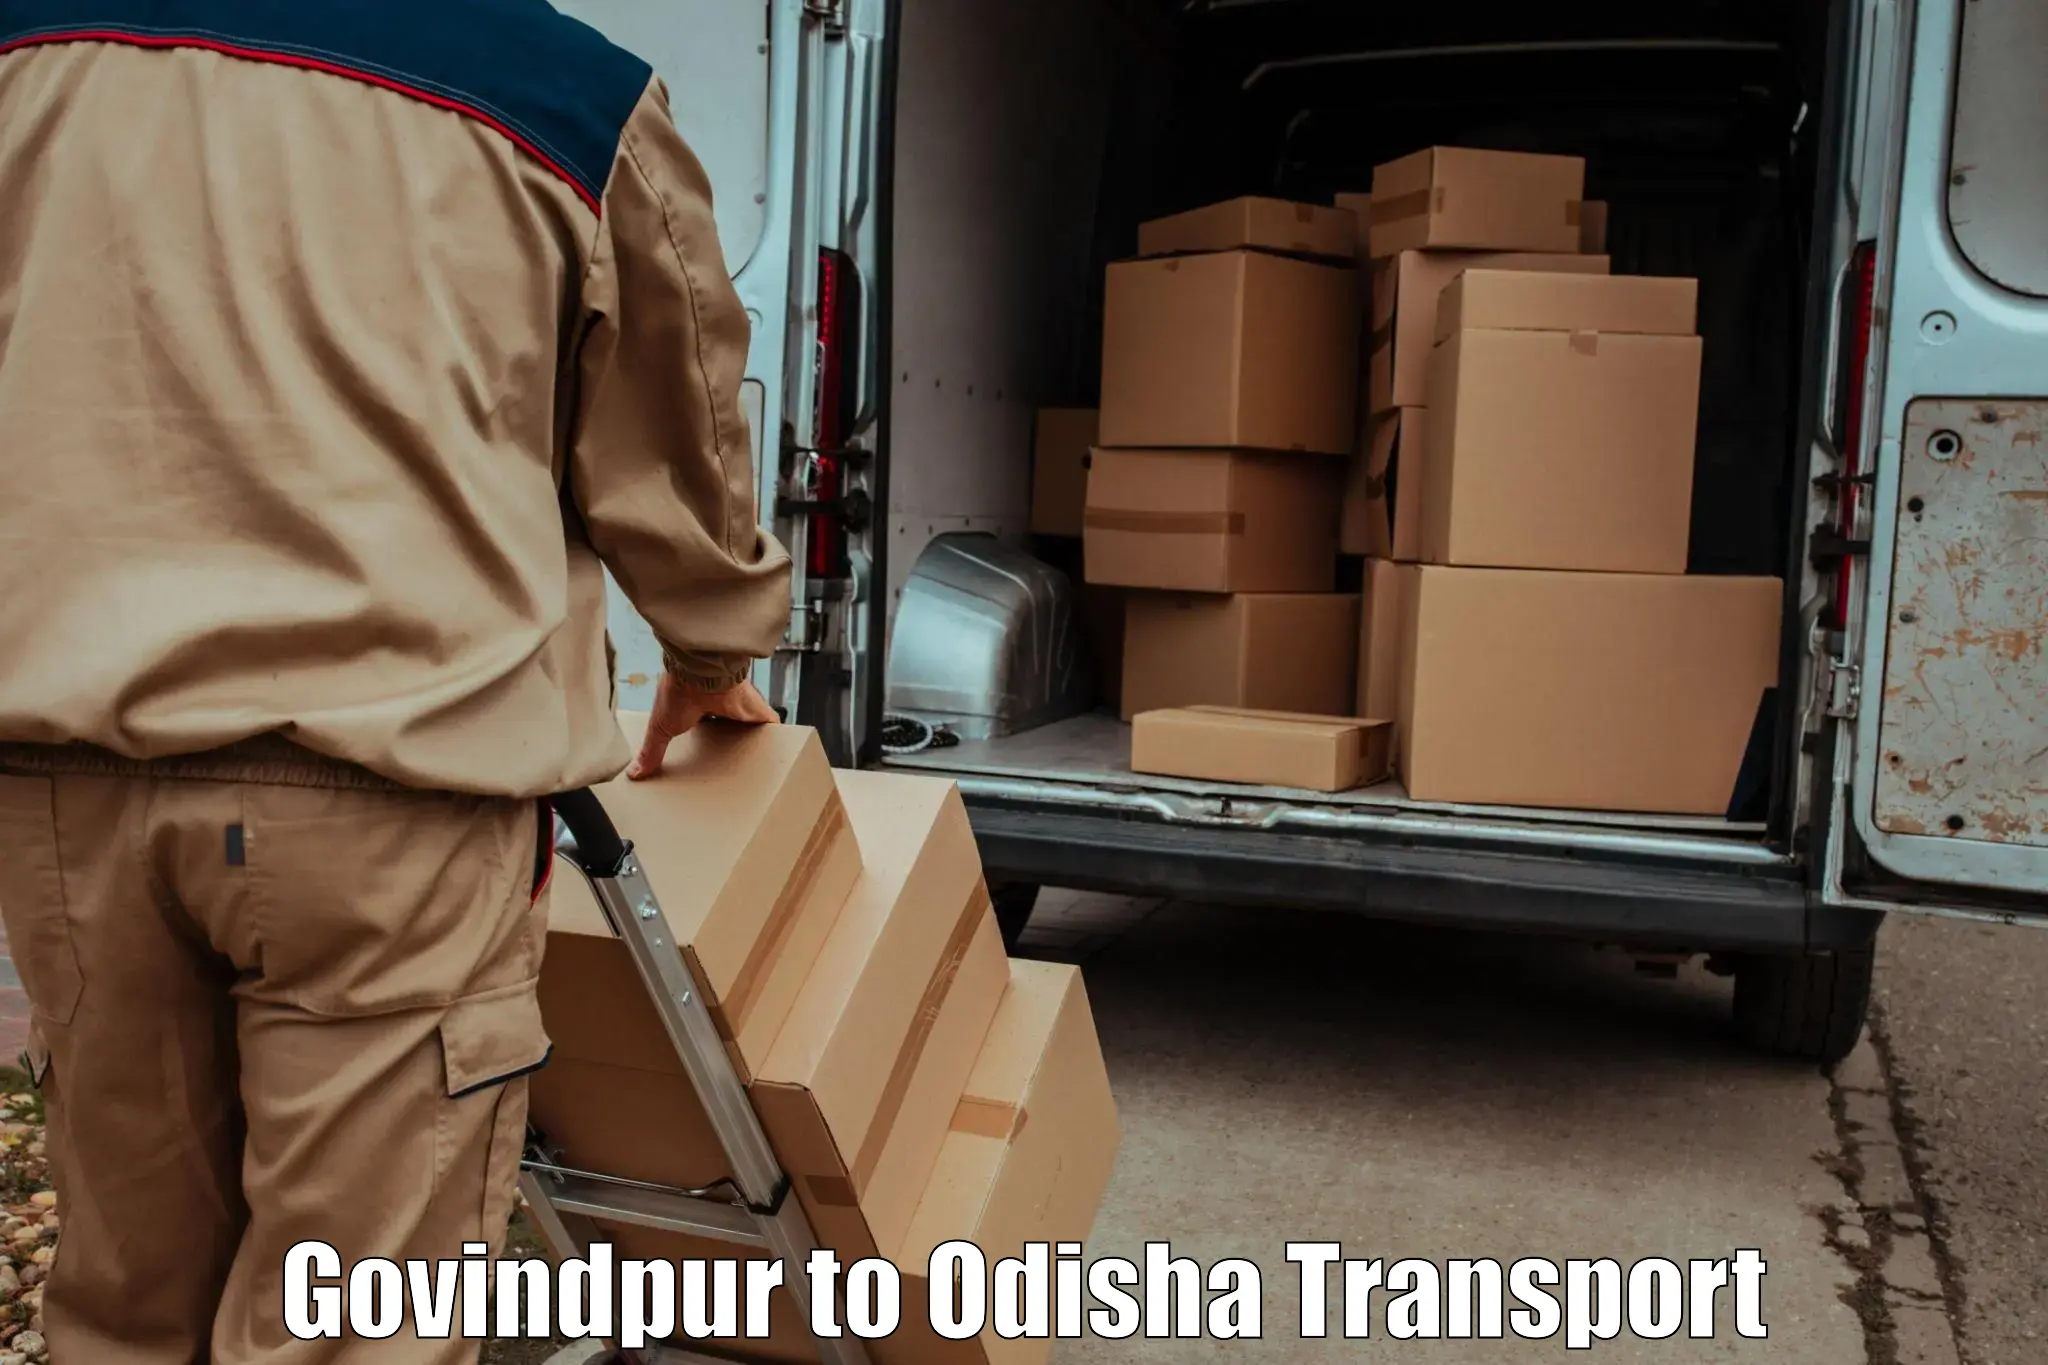 Online transport service Govindpur to Puri